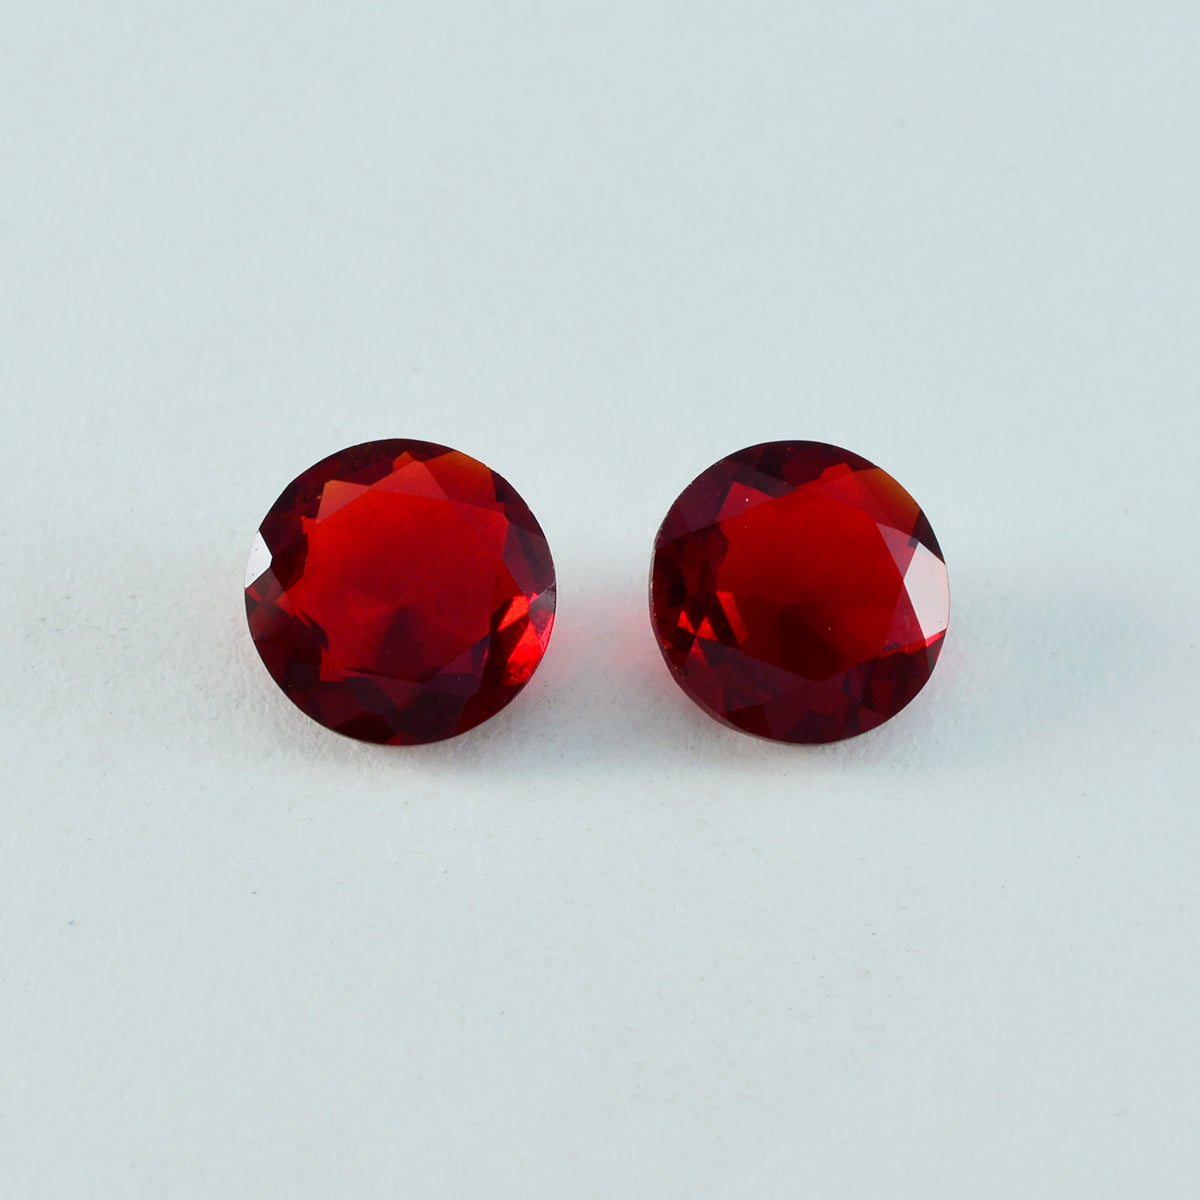 Riyogems 1 Stück roter Rubin mit CZ, facettiert, 12 x 12 mm, runde Form, gut aussehender Qualitätsstein